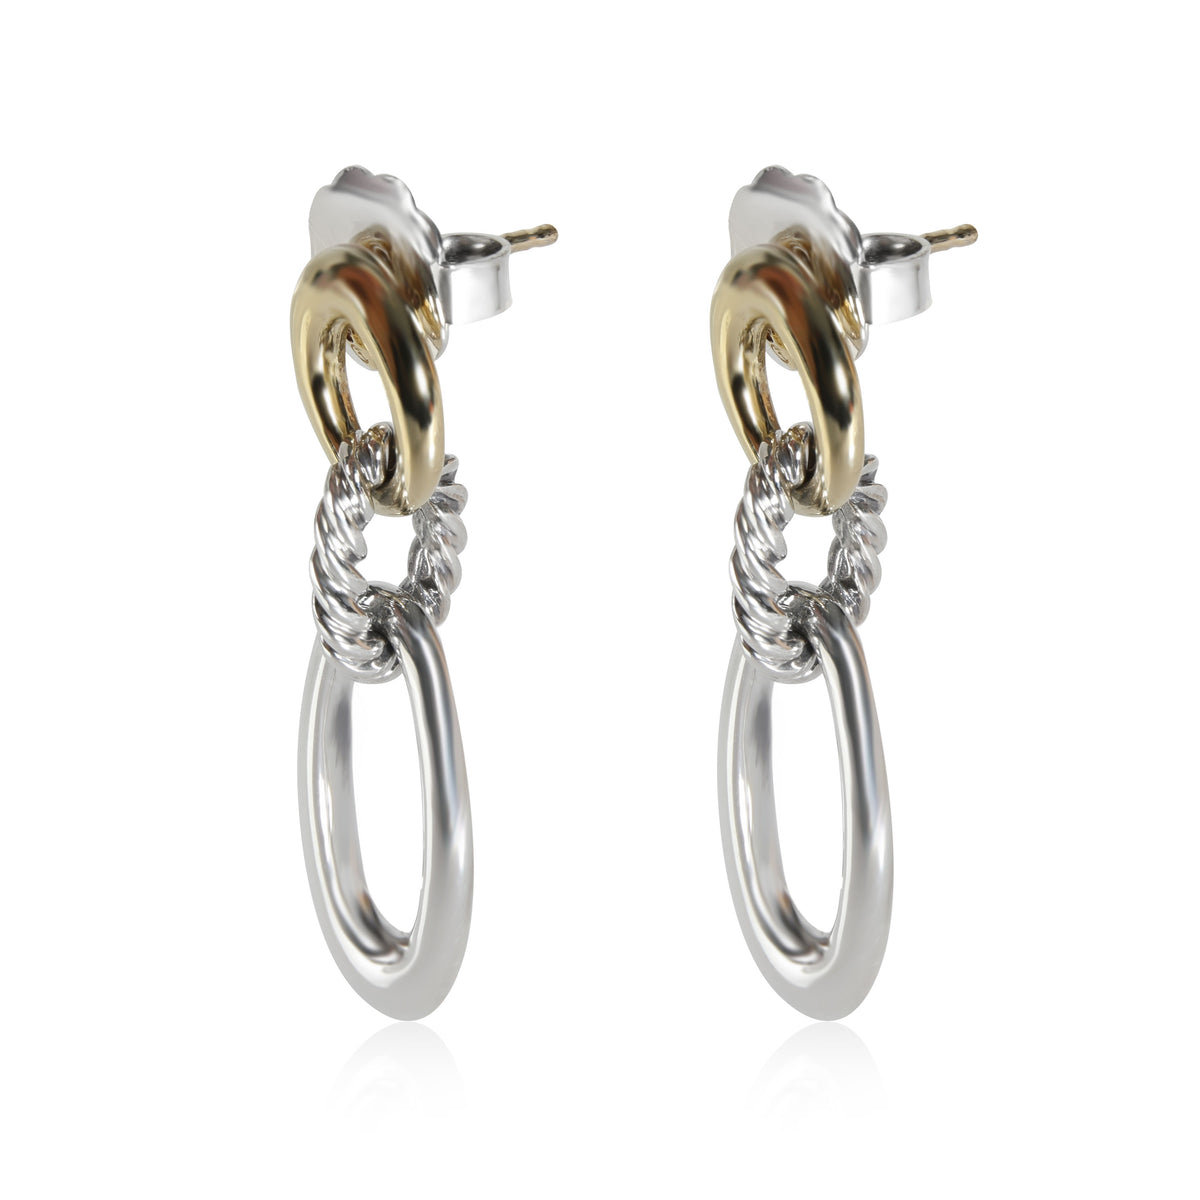 David Yurman Drop Link Earrings in 18k Gold/Sterling